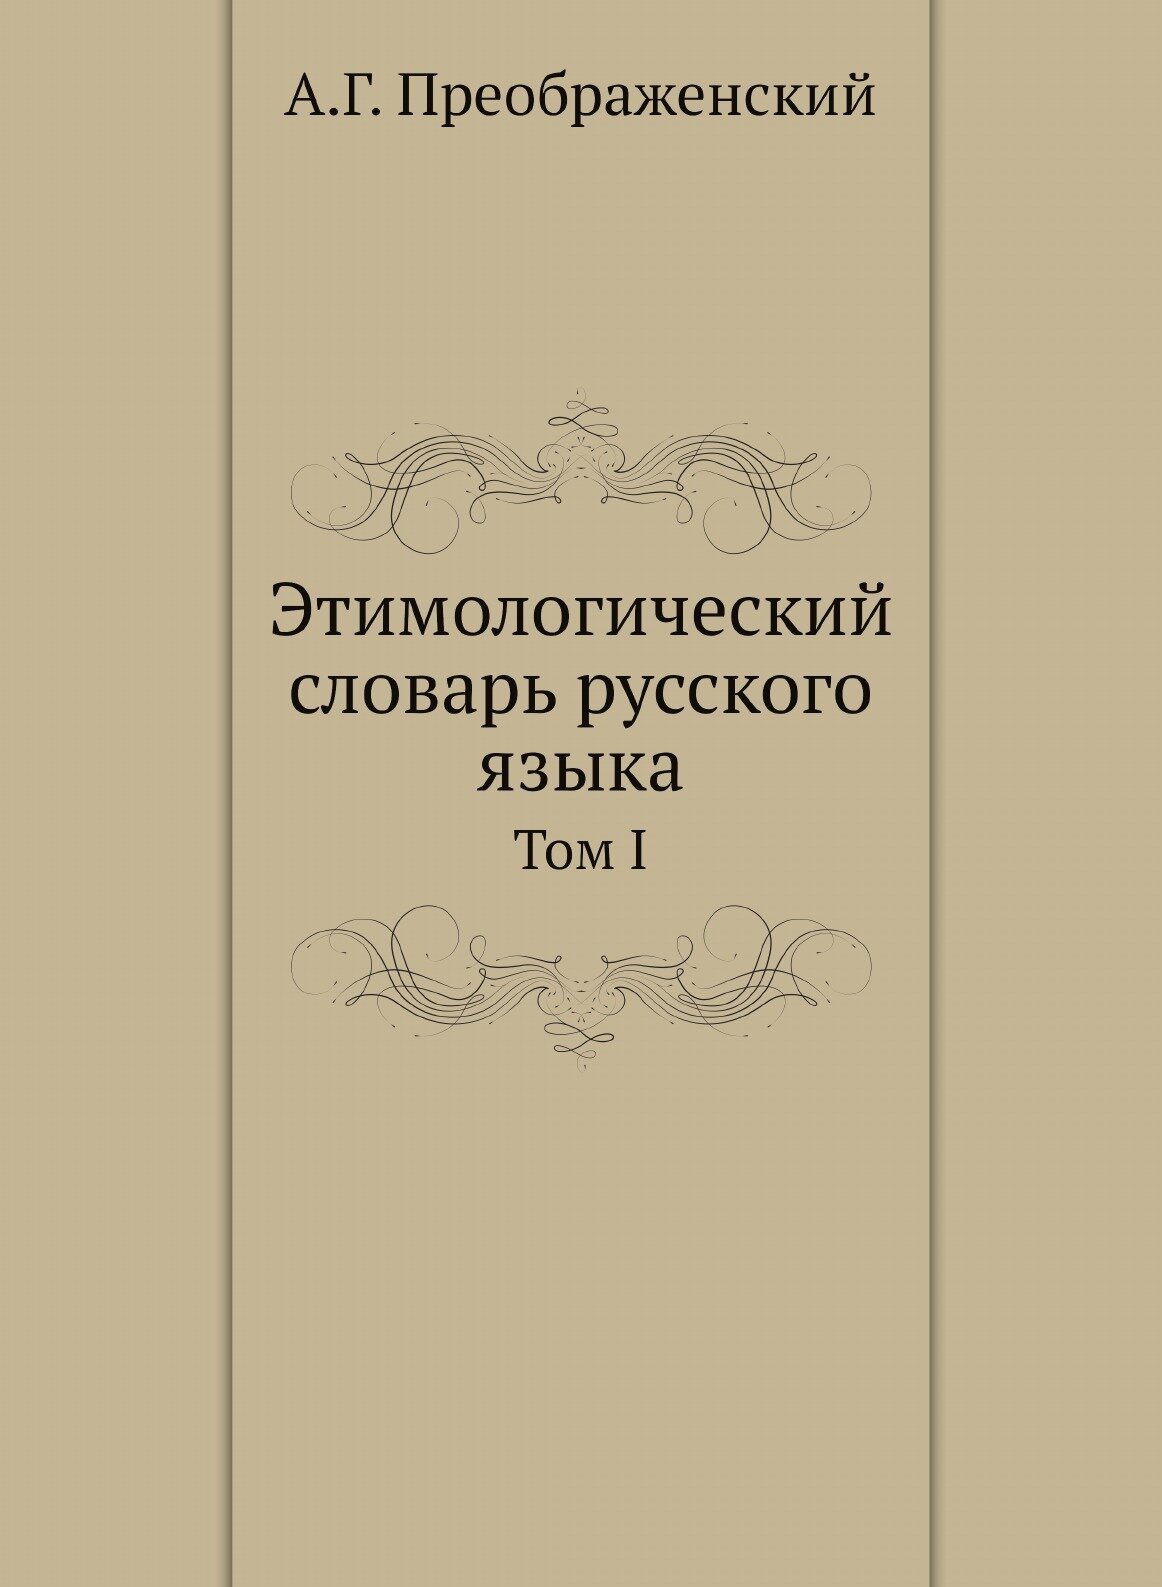 Этимологический словарь русского языка. Том I